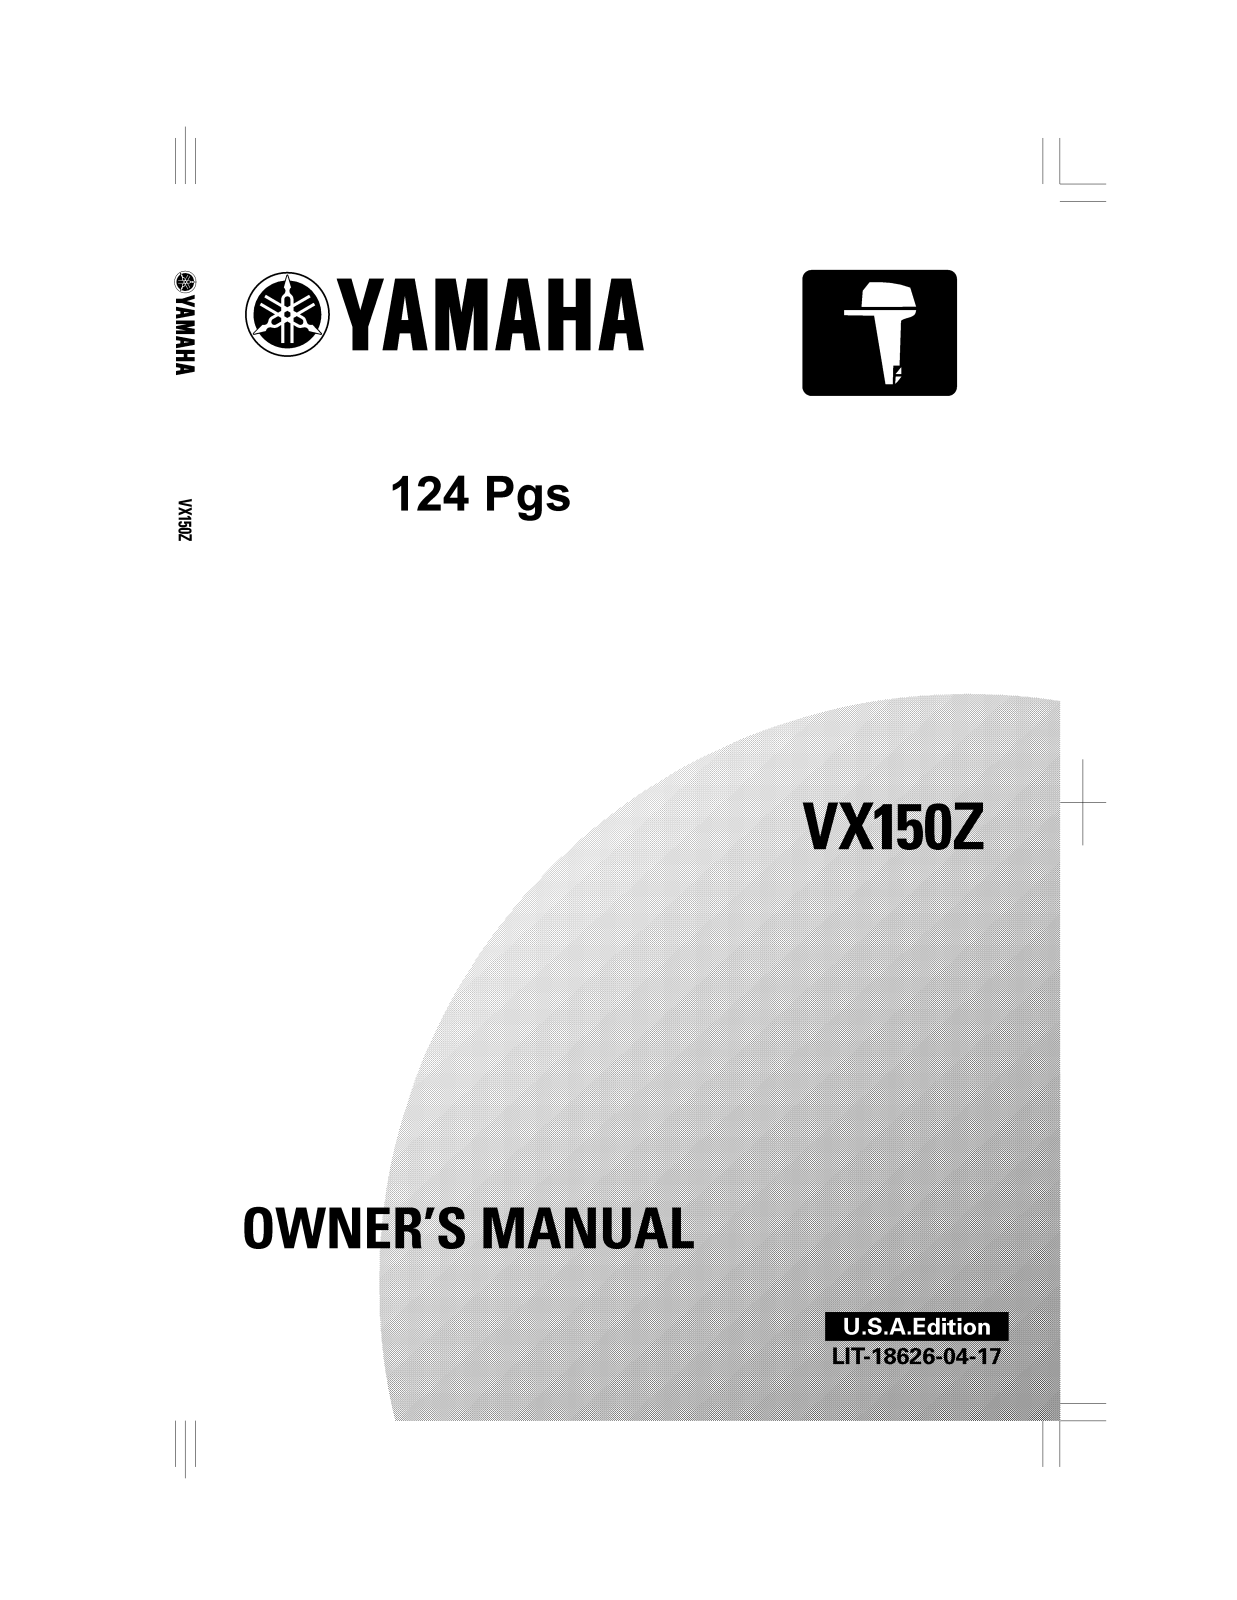 Yamaha VX150Z User Manual